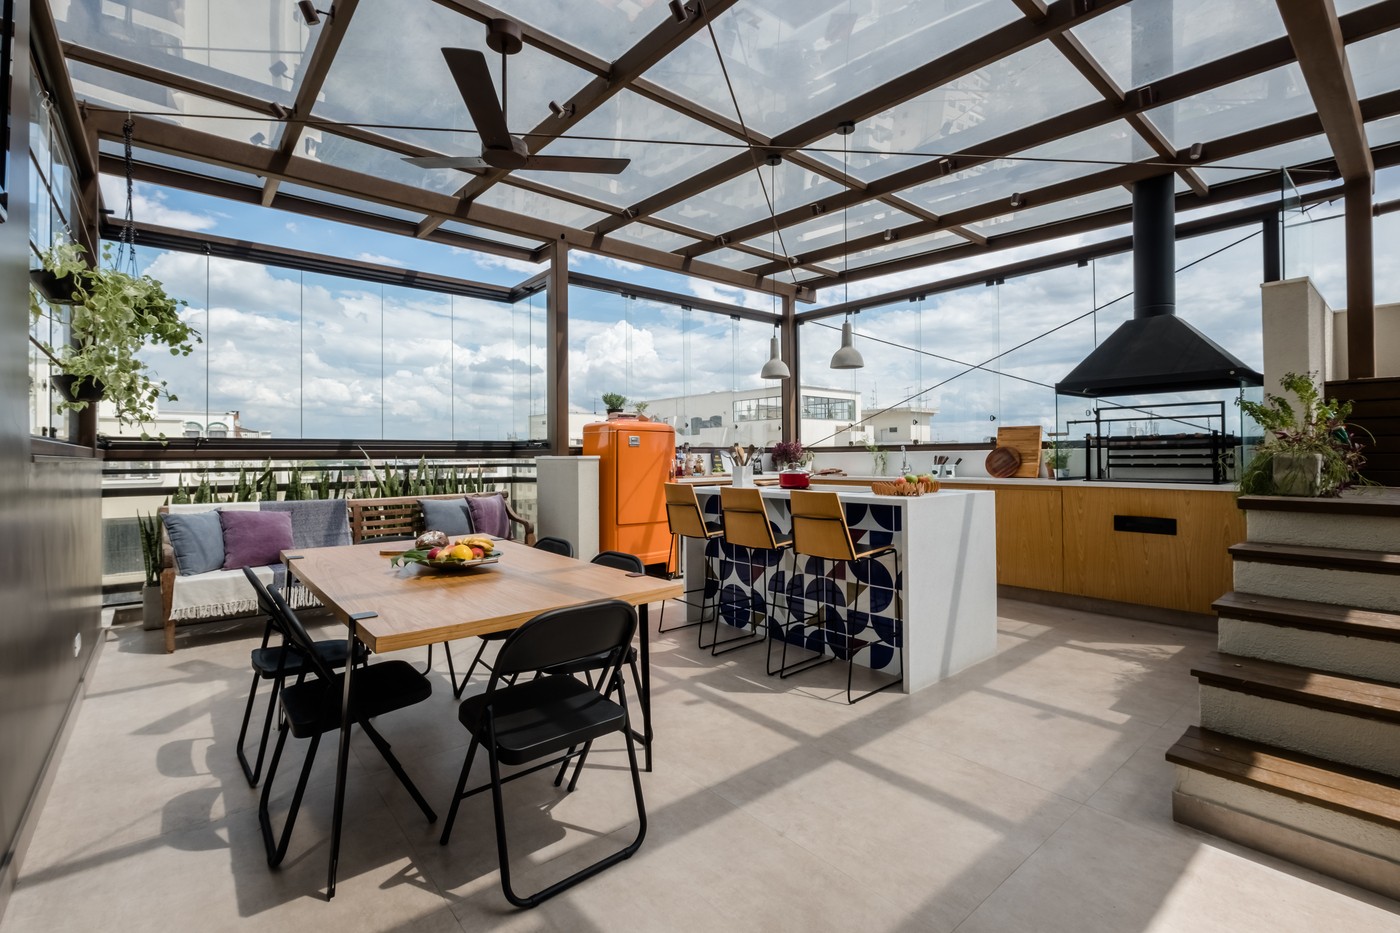 Décor do dia: terraço reúne estilo industrial e cores em área gourmet  (Foto: Nathalie Artaxo)